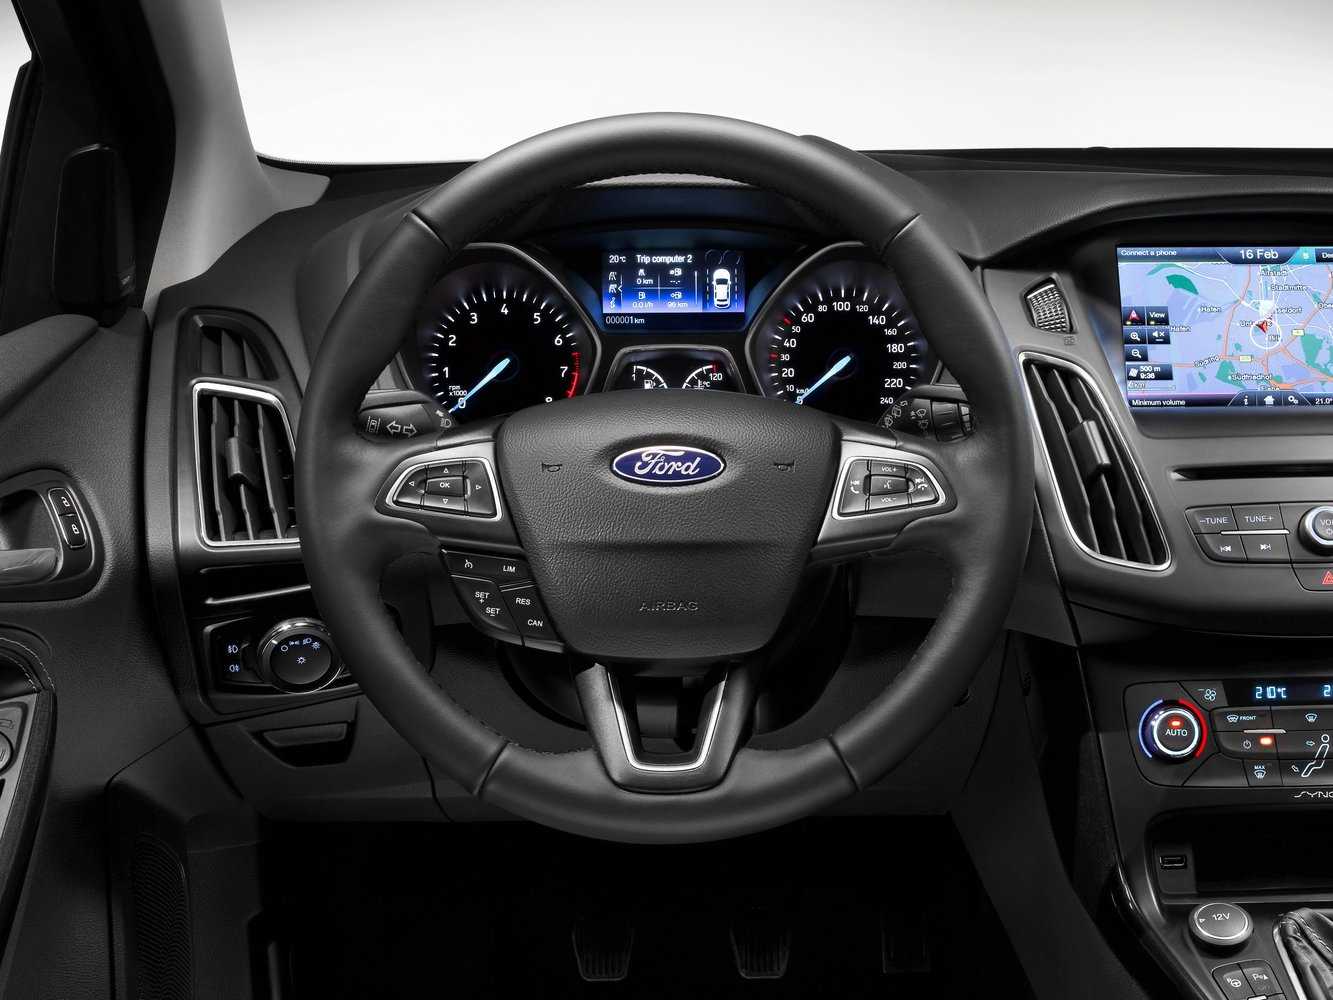 Ford focus 1.6 mt trend (07.2011 - 06.2014) - технические характеристики